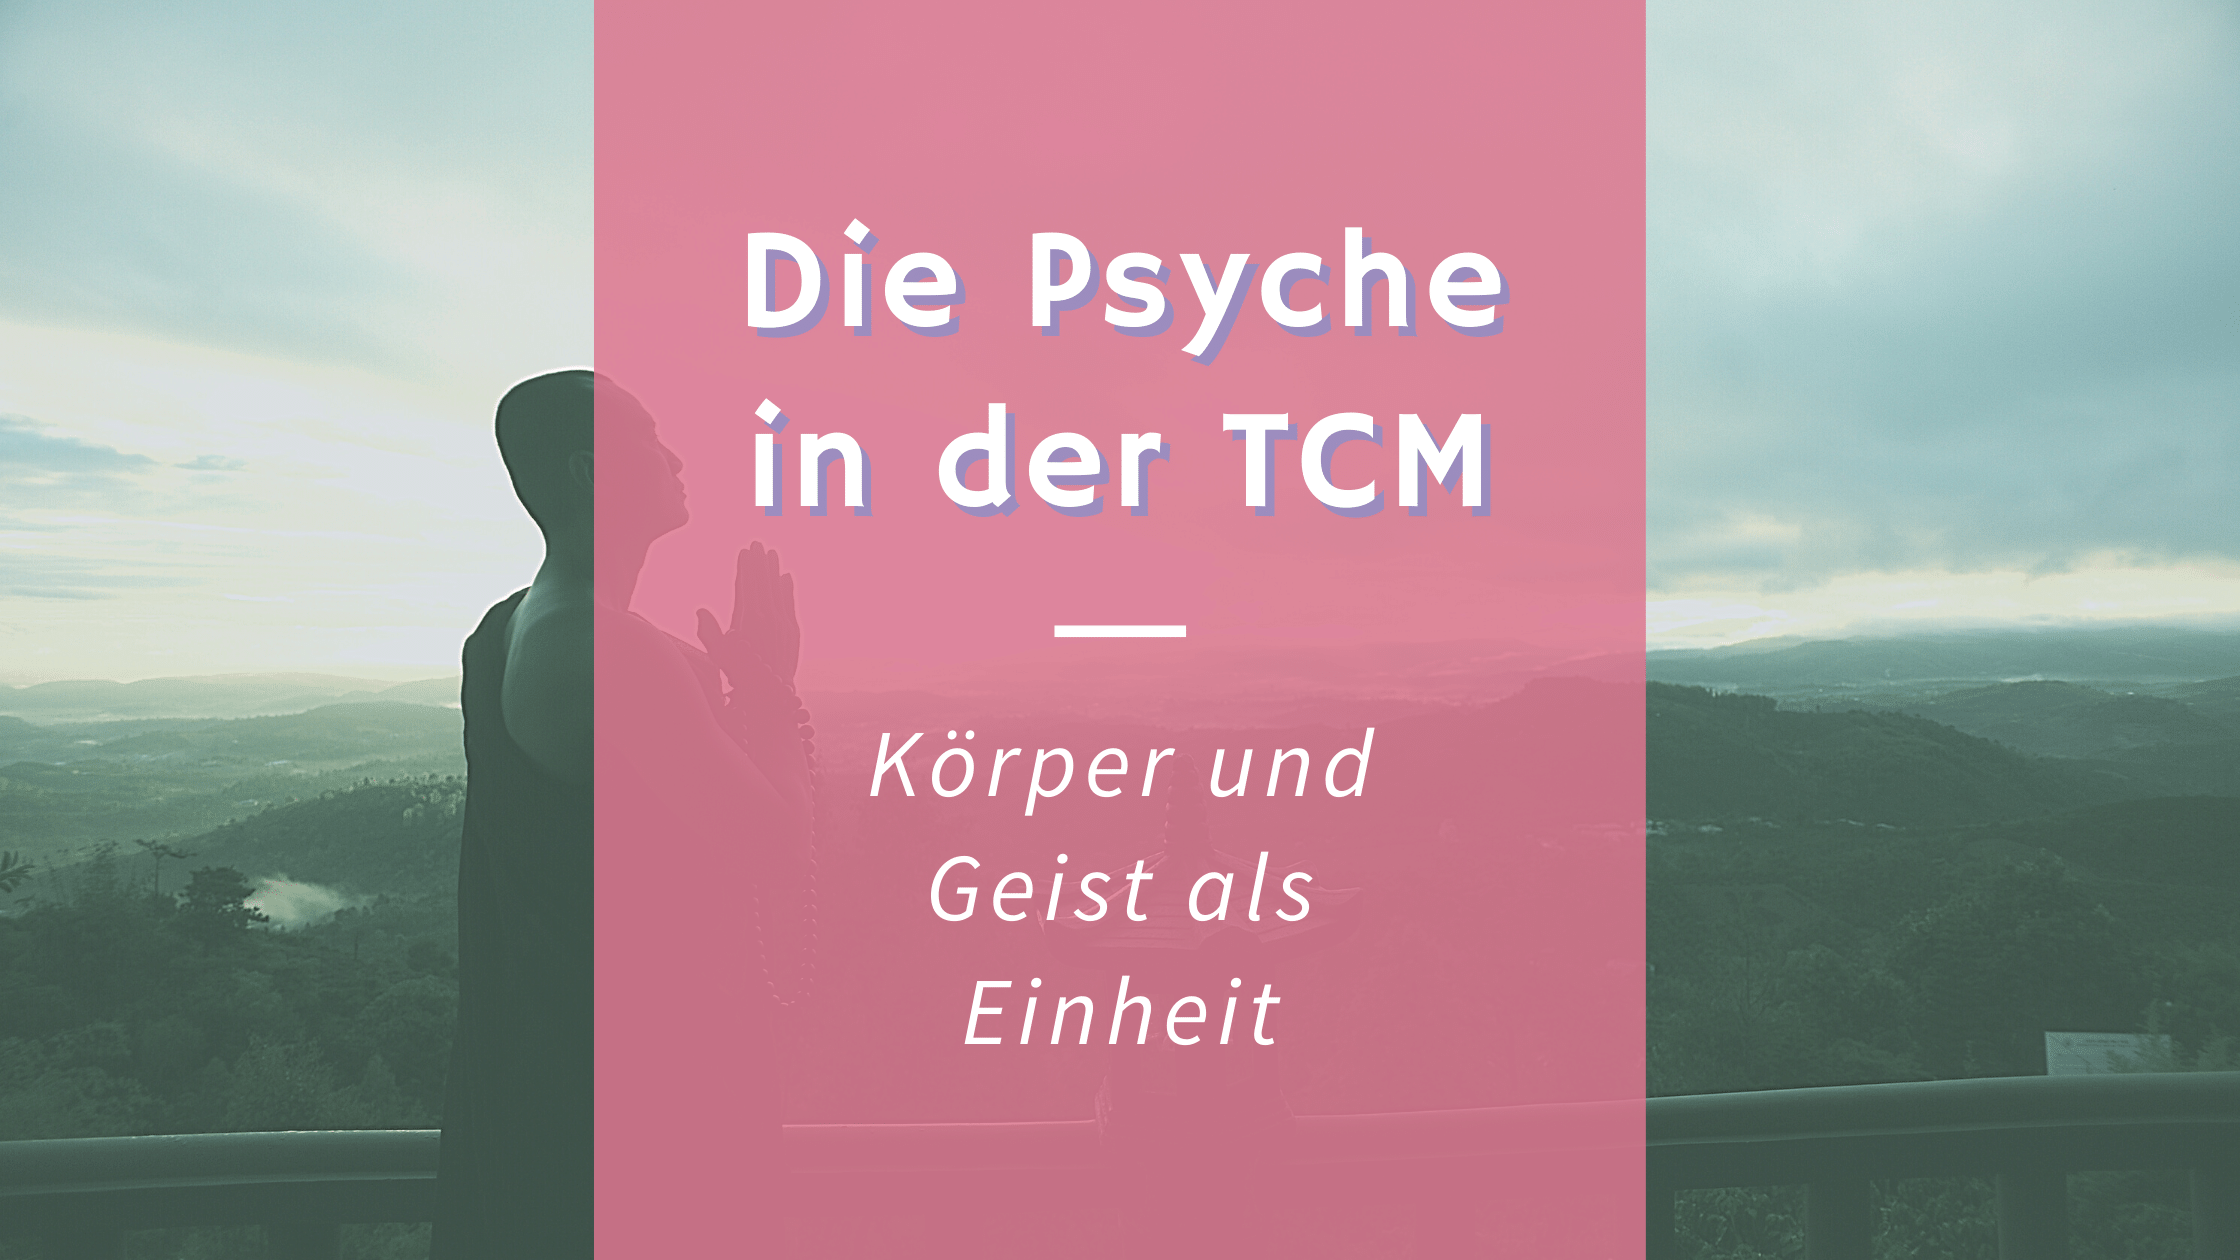 Die Psyche in der TCM – Was macht sie besonders?